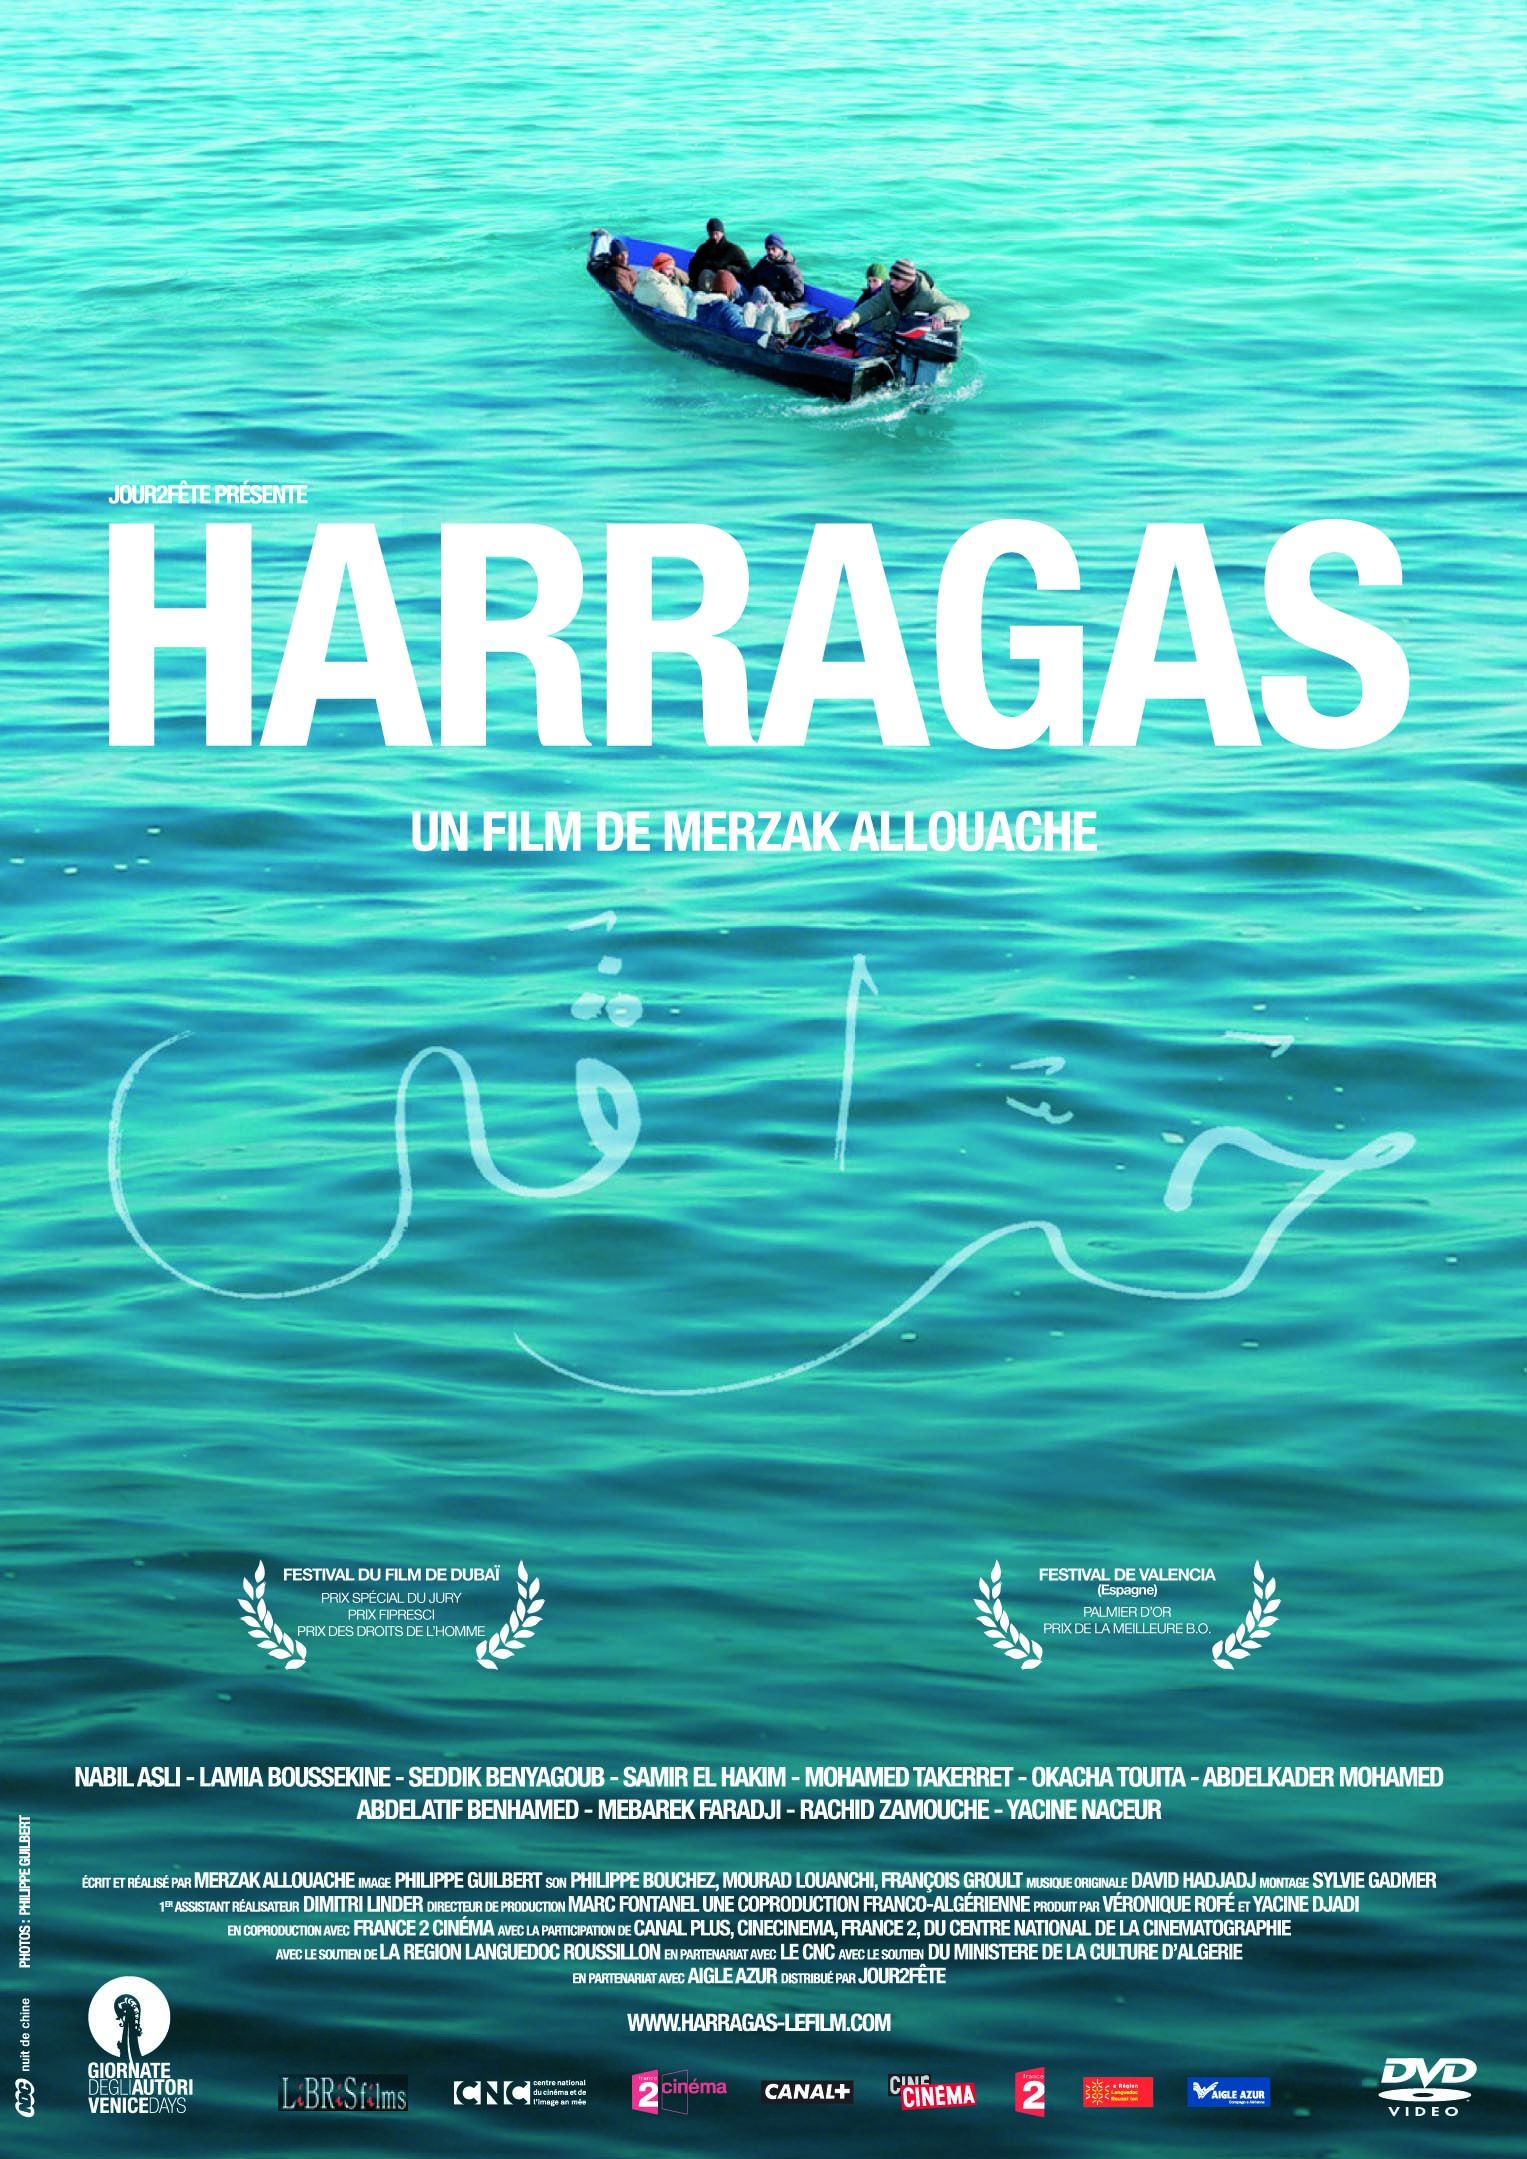 Harragas [DVD]